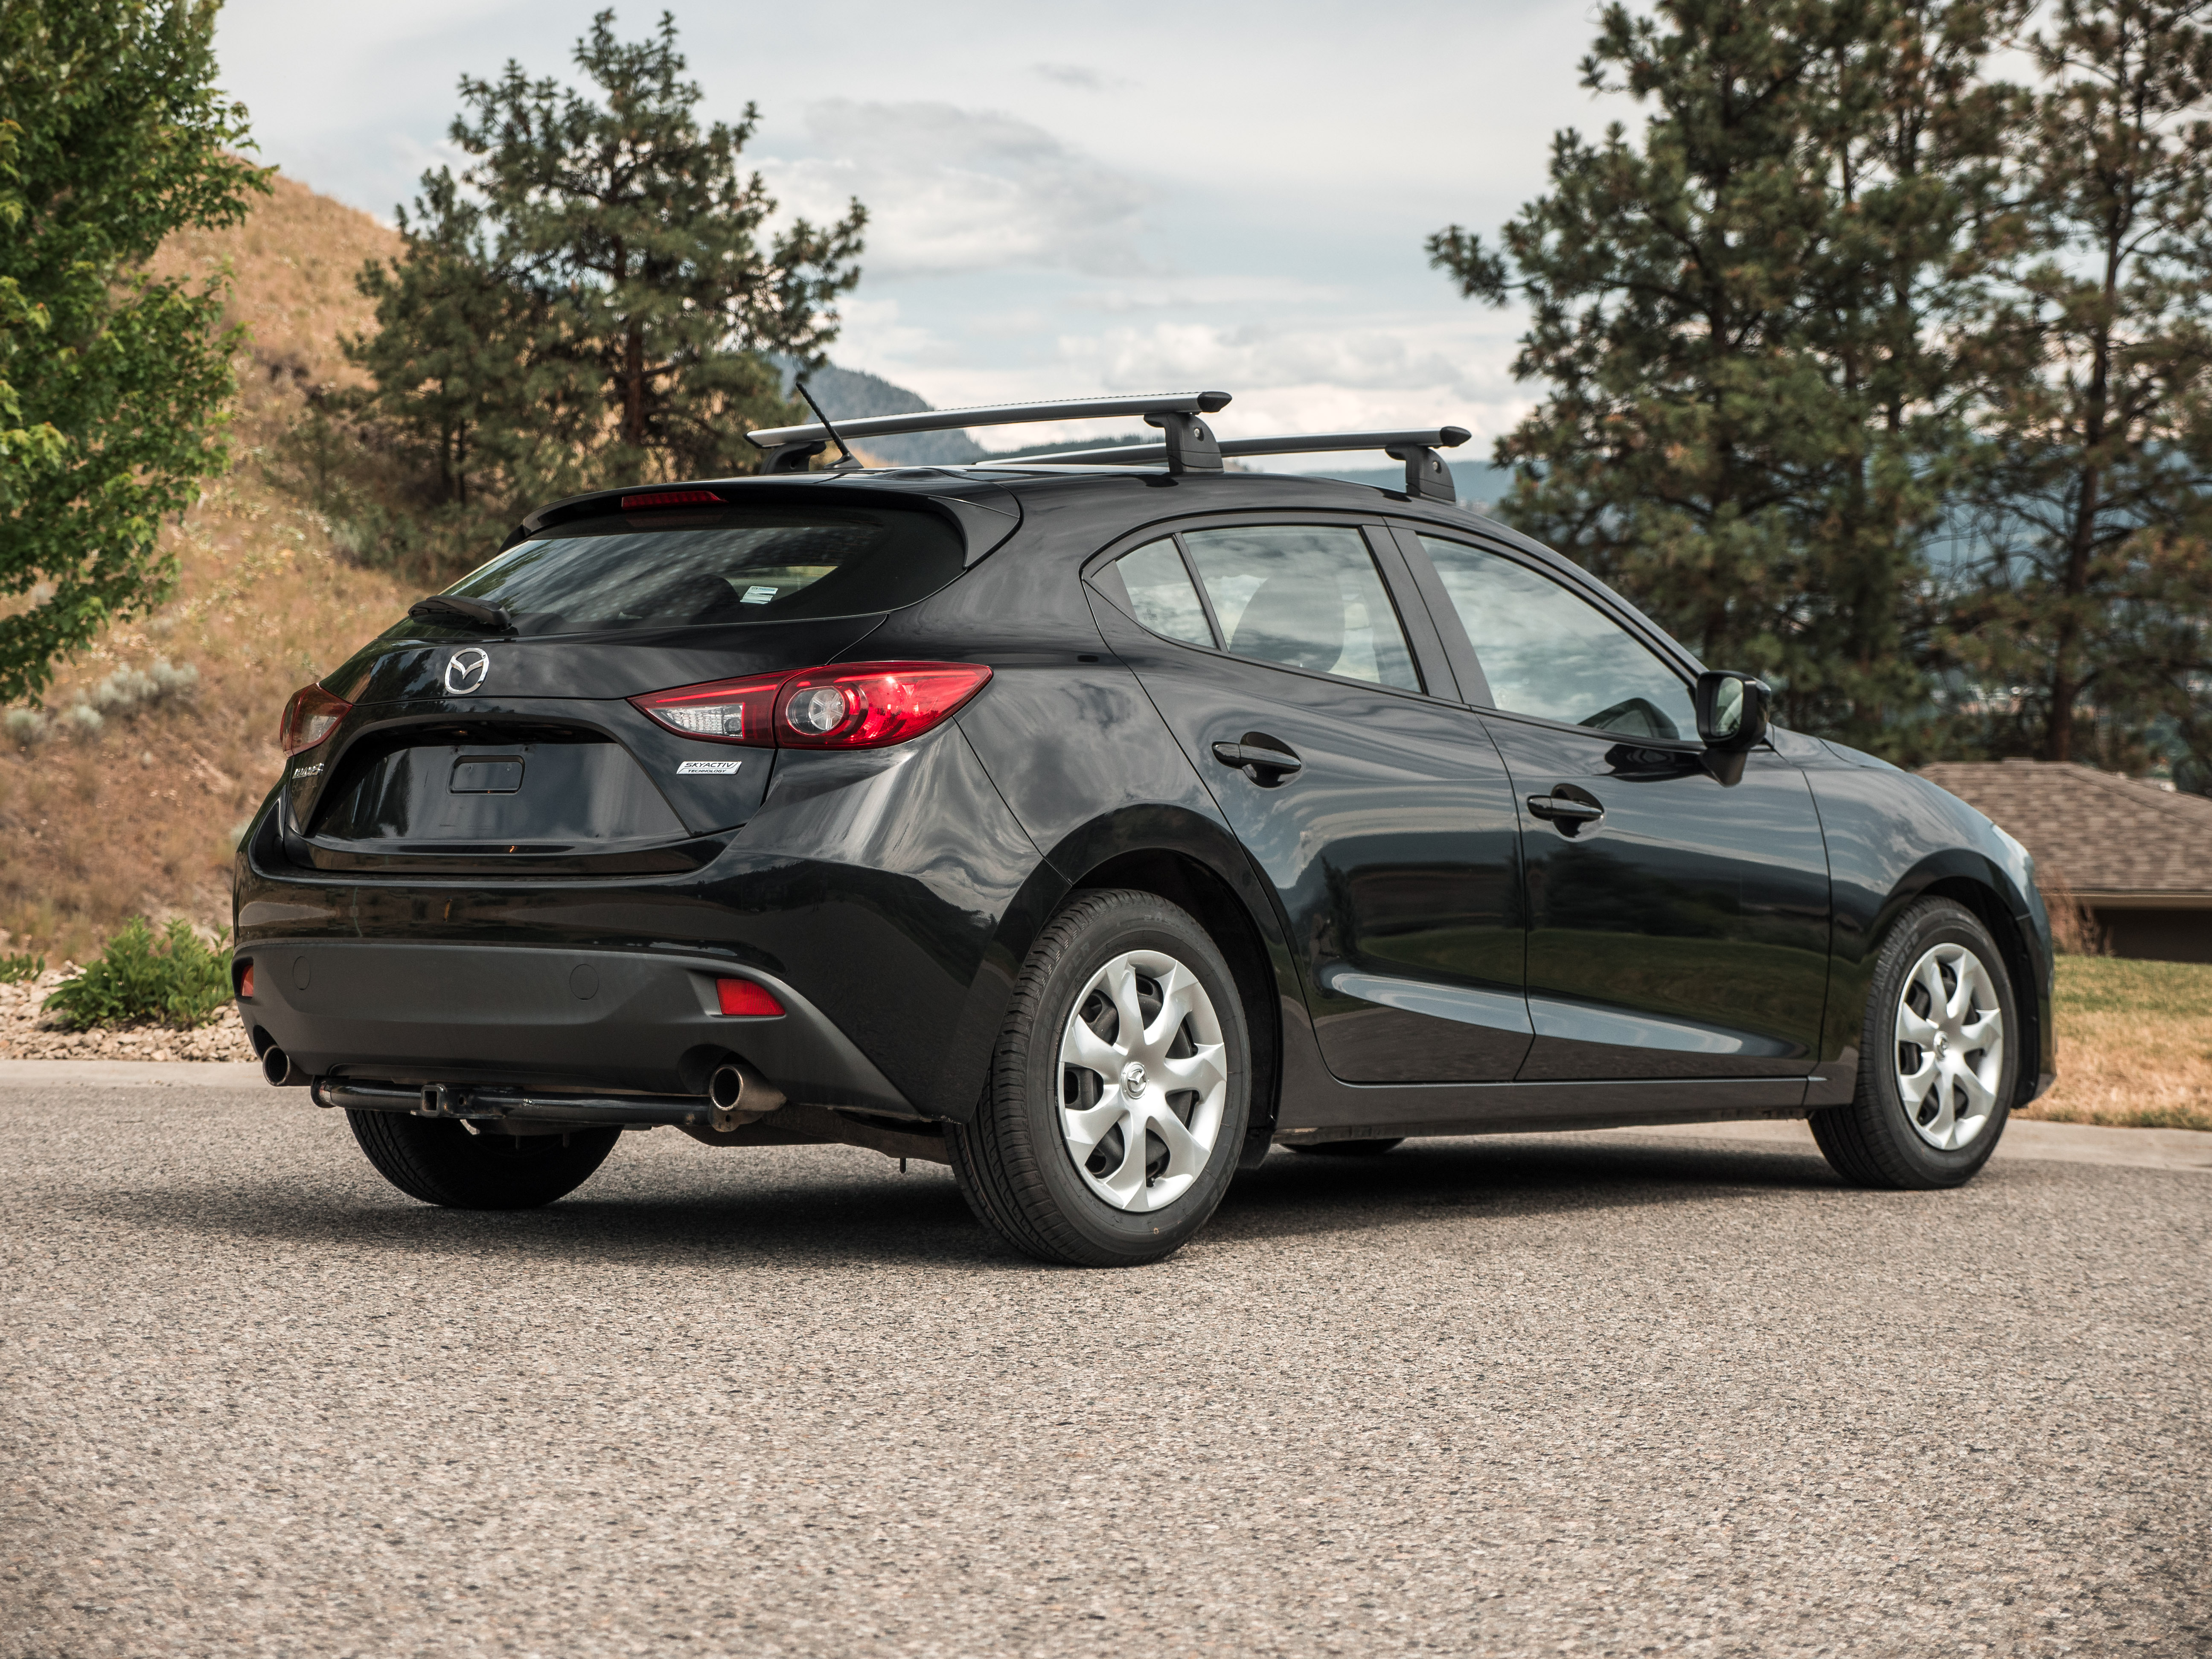 Pre-Owned 2015 Mazda 3 Sport GX 4 Door Hatchback in Kelowna #529-5101A ...